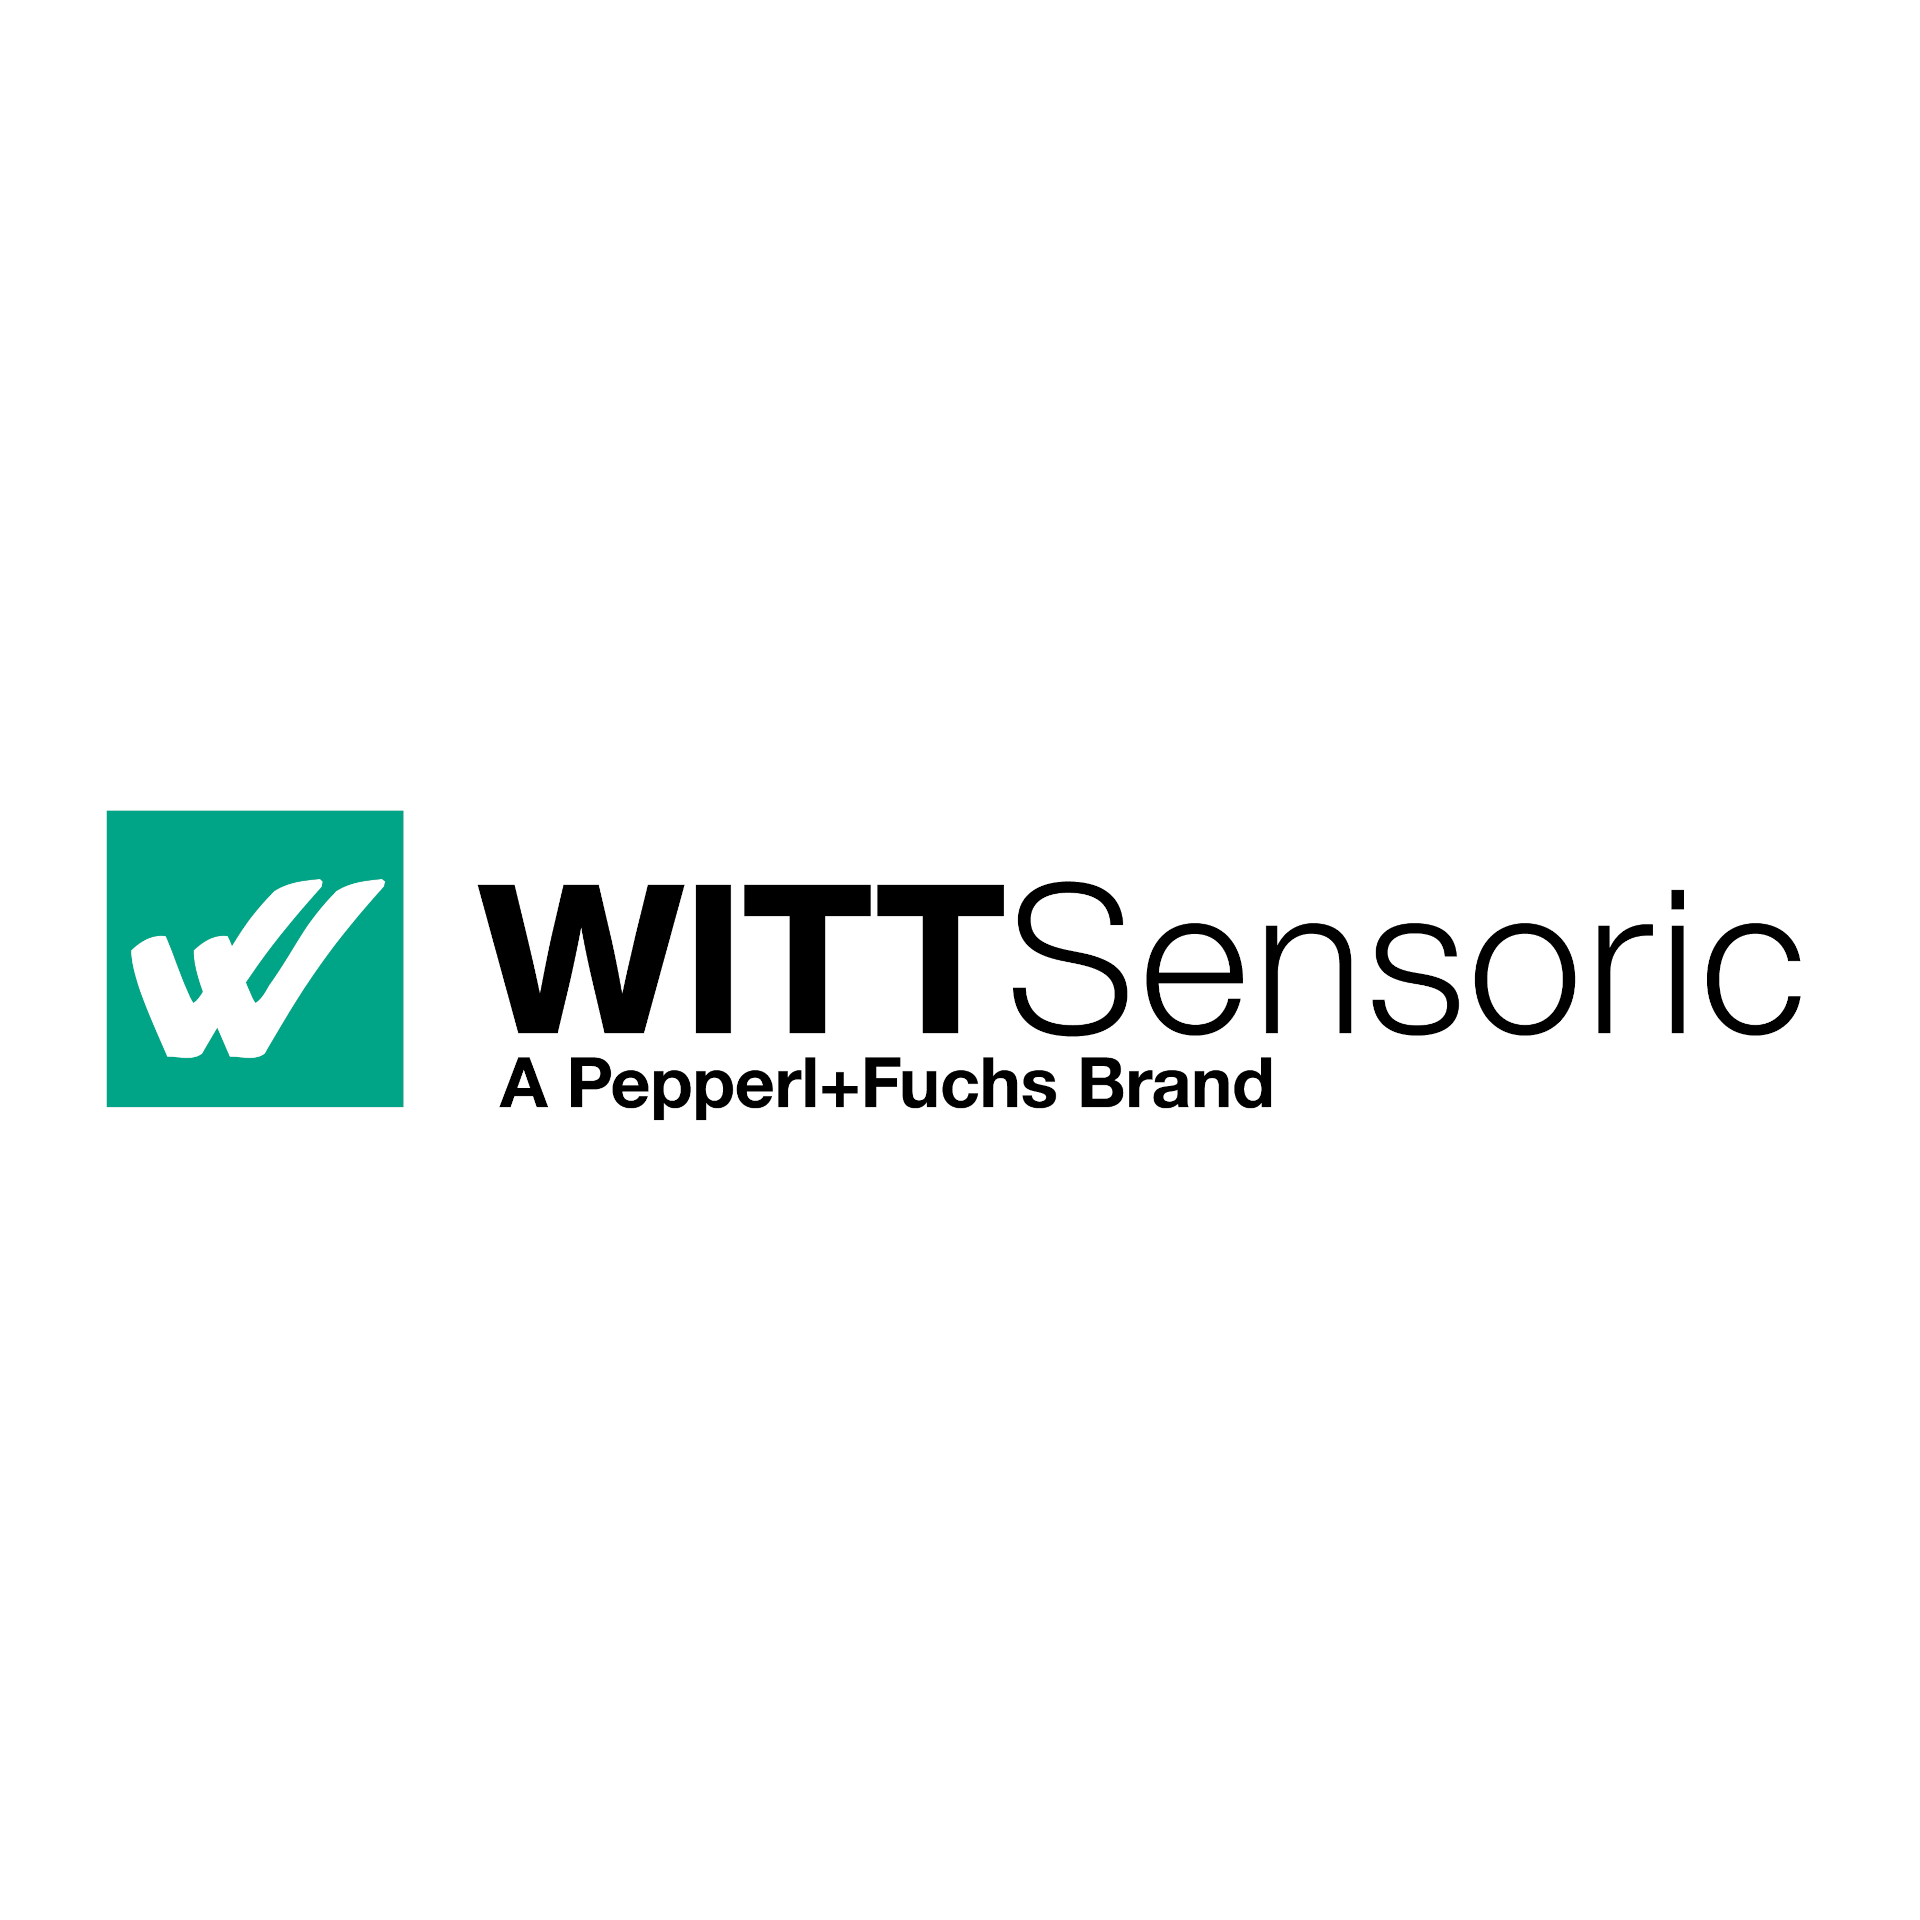 WITT Sensoric—Het Pepperl+Fuchs Merk voor Poortautomatisering